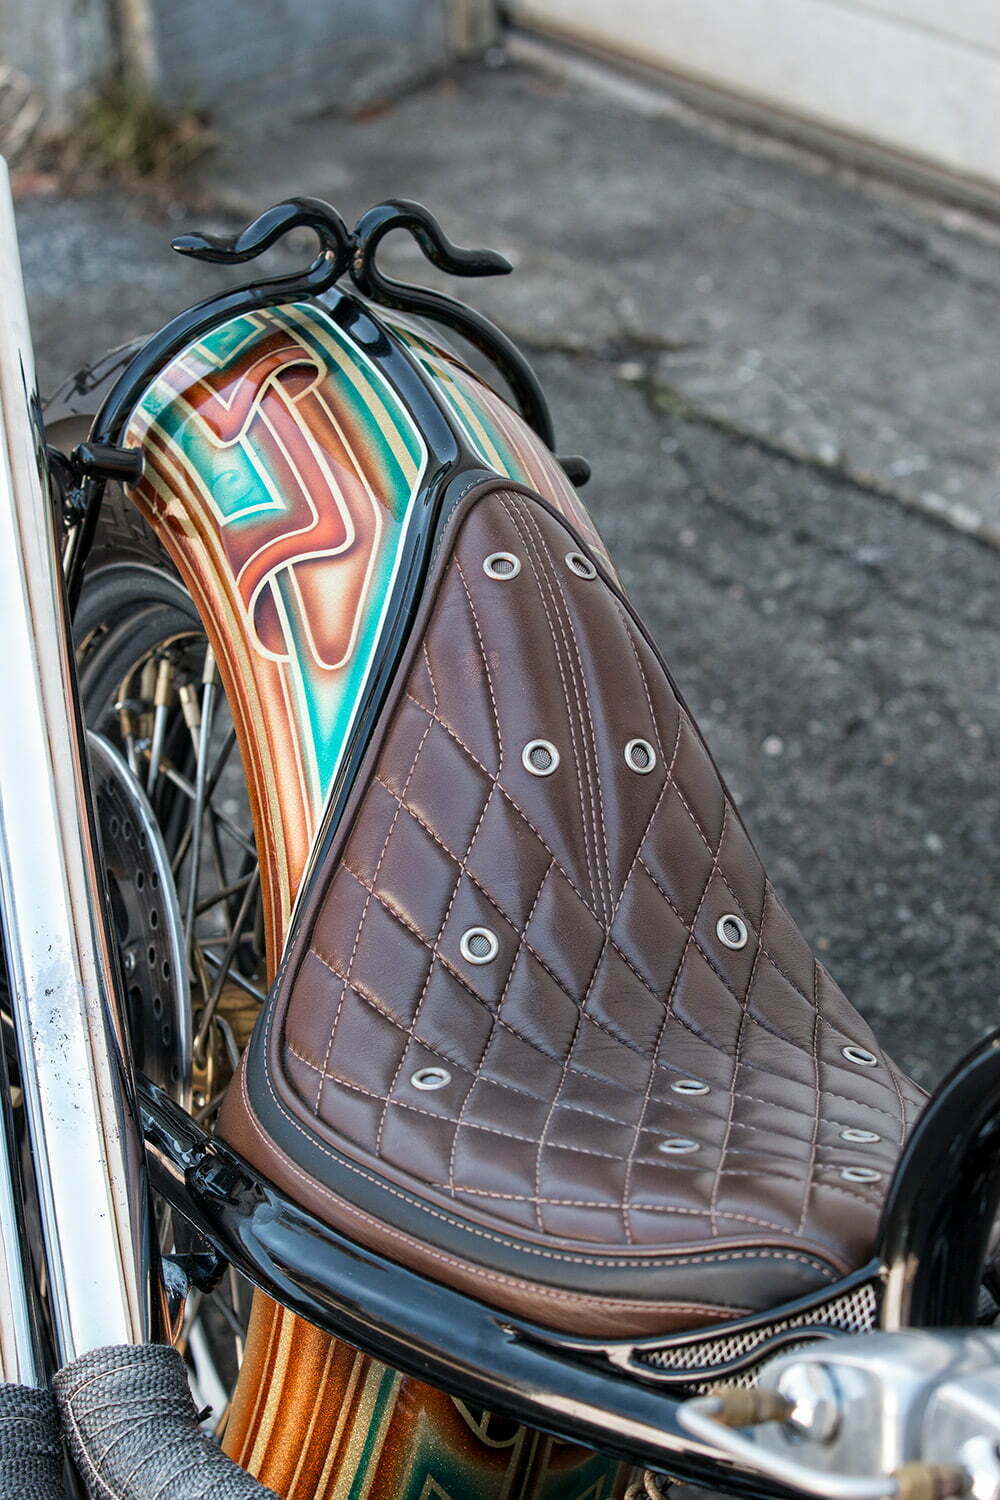 diamond-stitch patterned leather seat